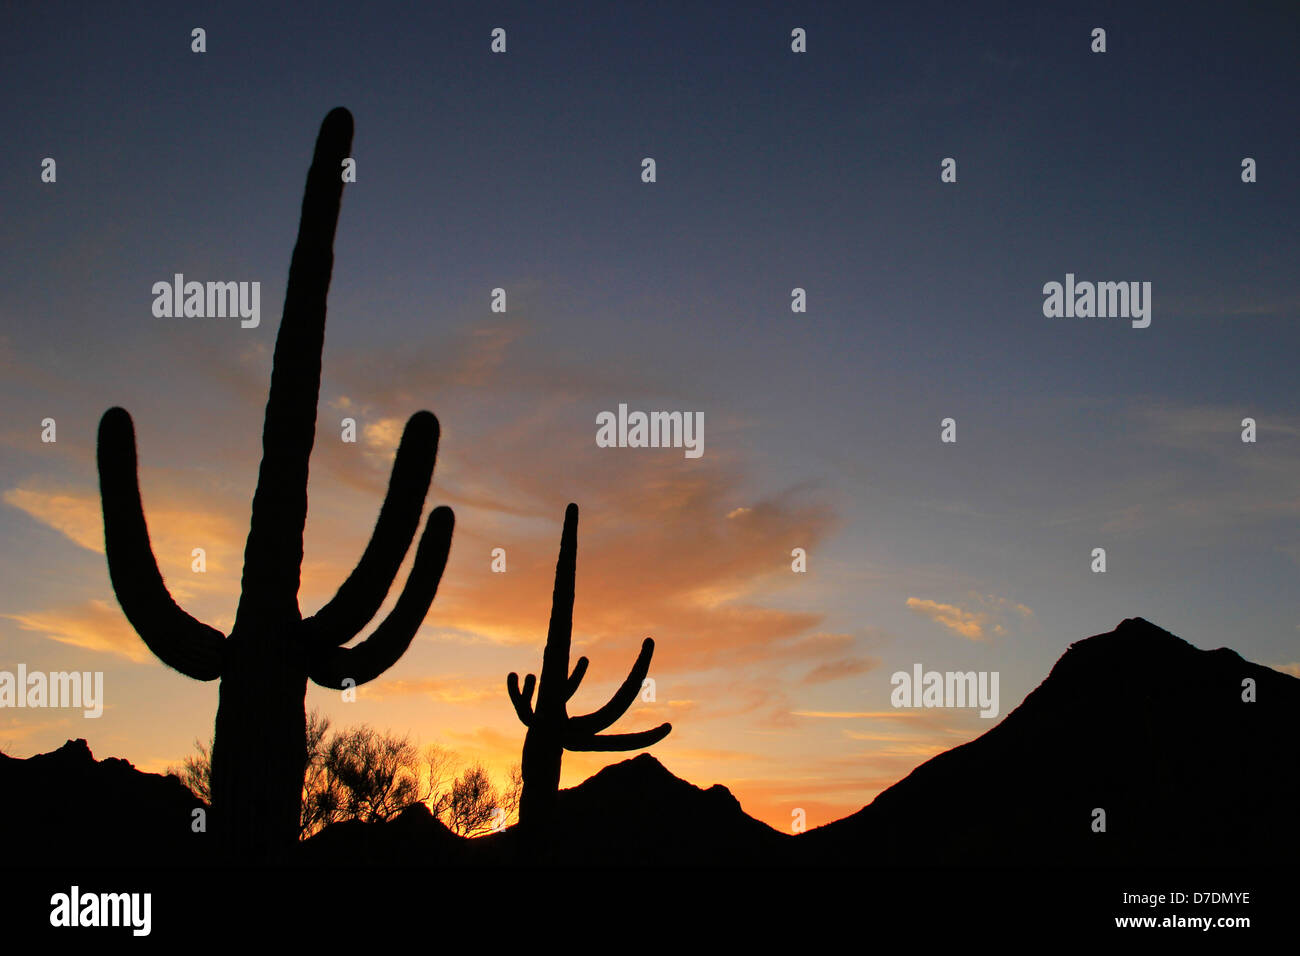 Saguaro National Park at sunset, Arizona, USA Stock Photo